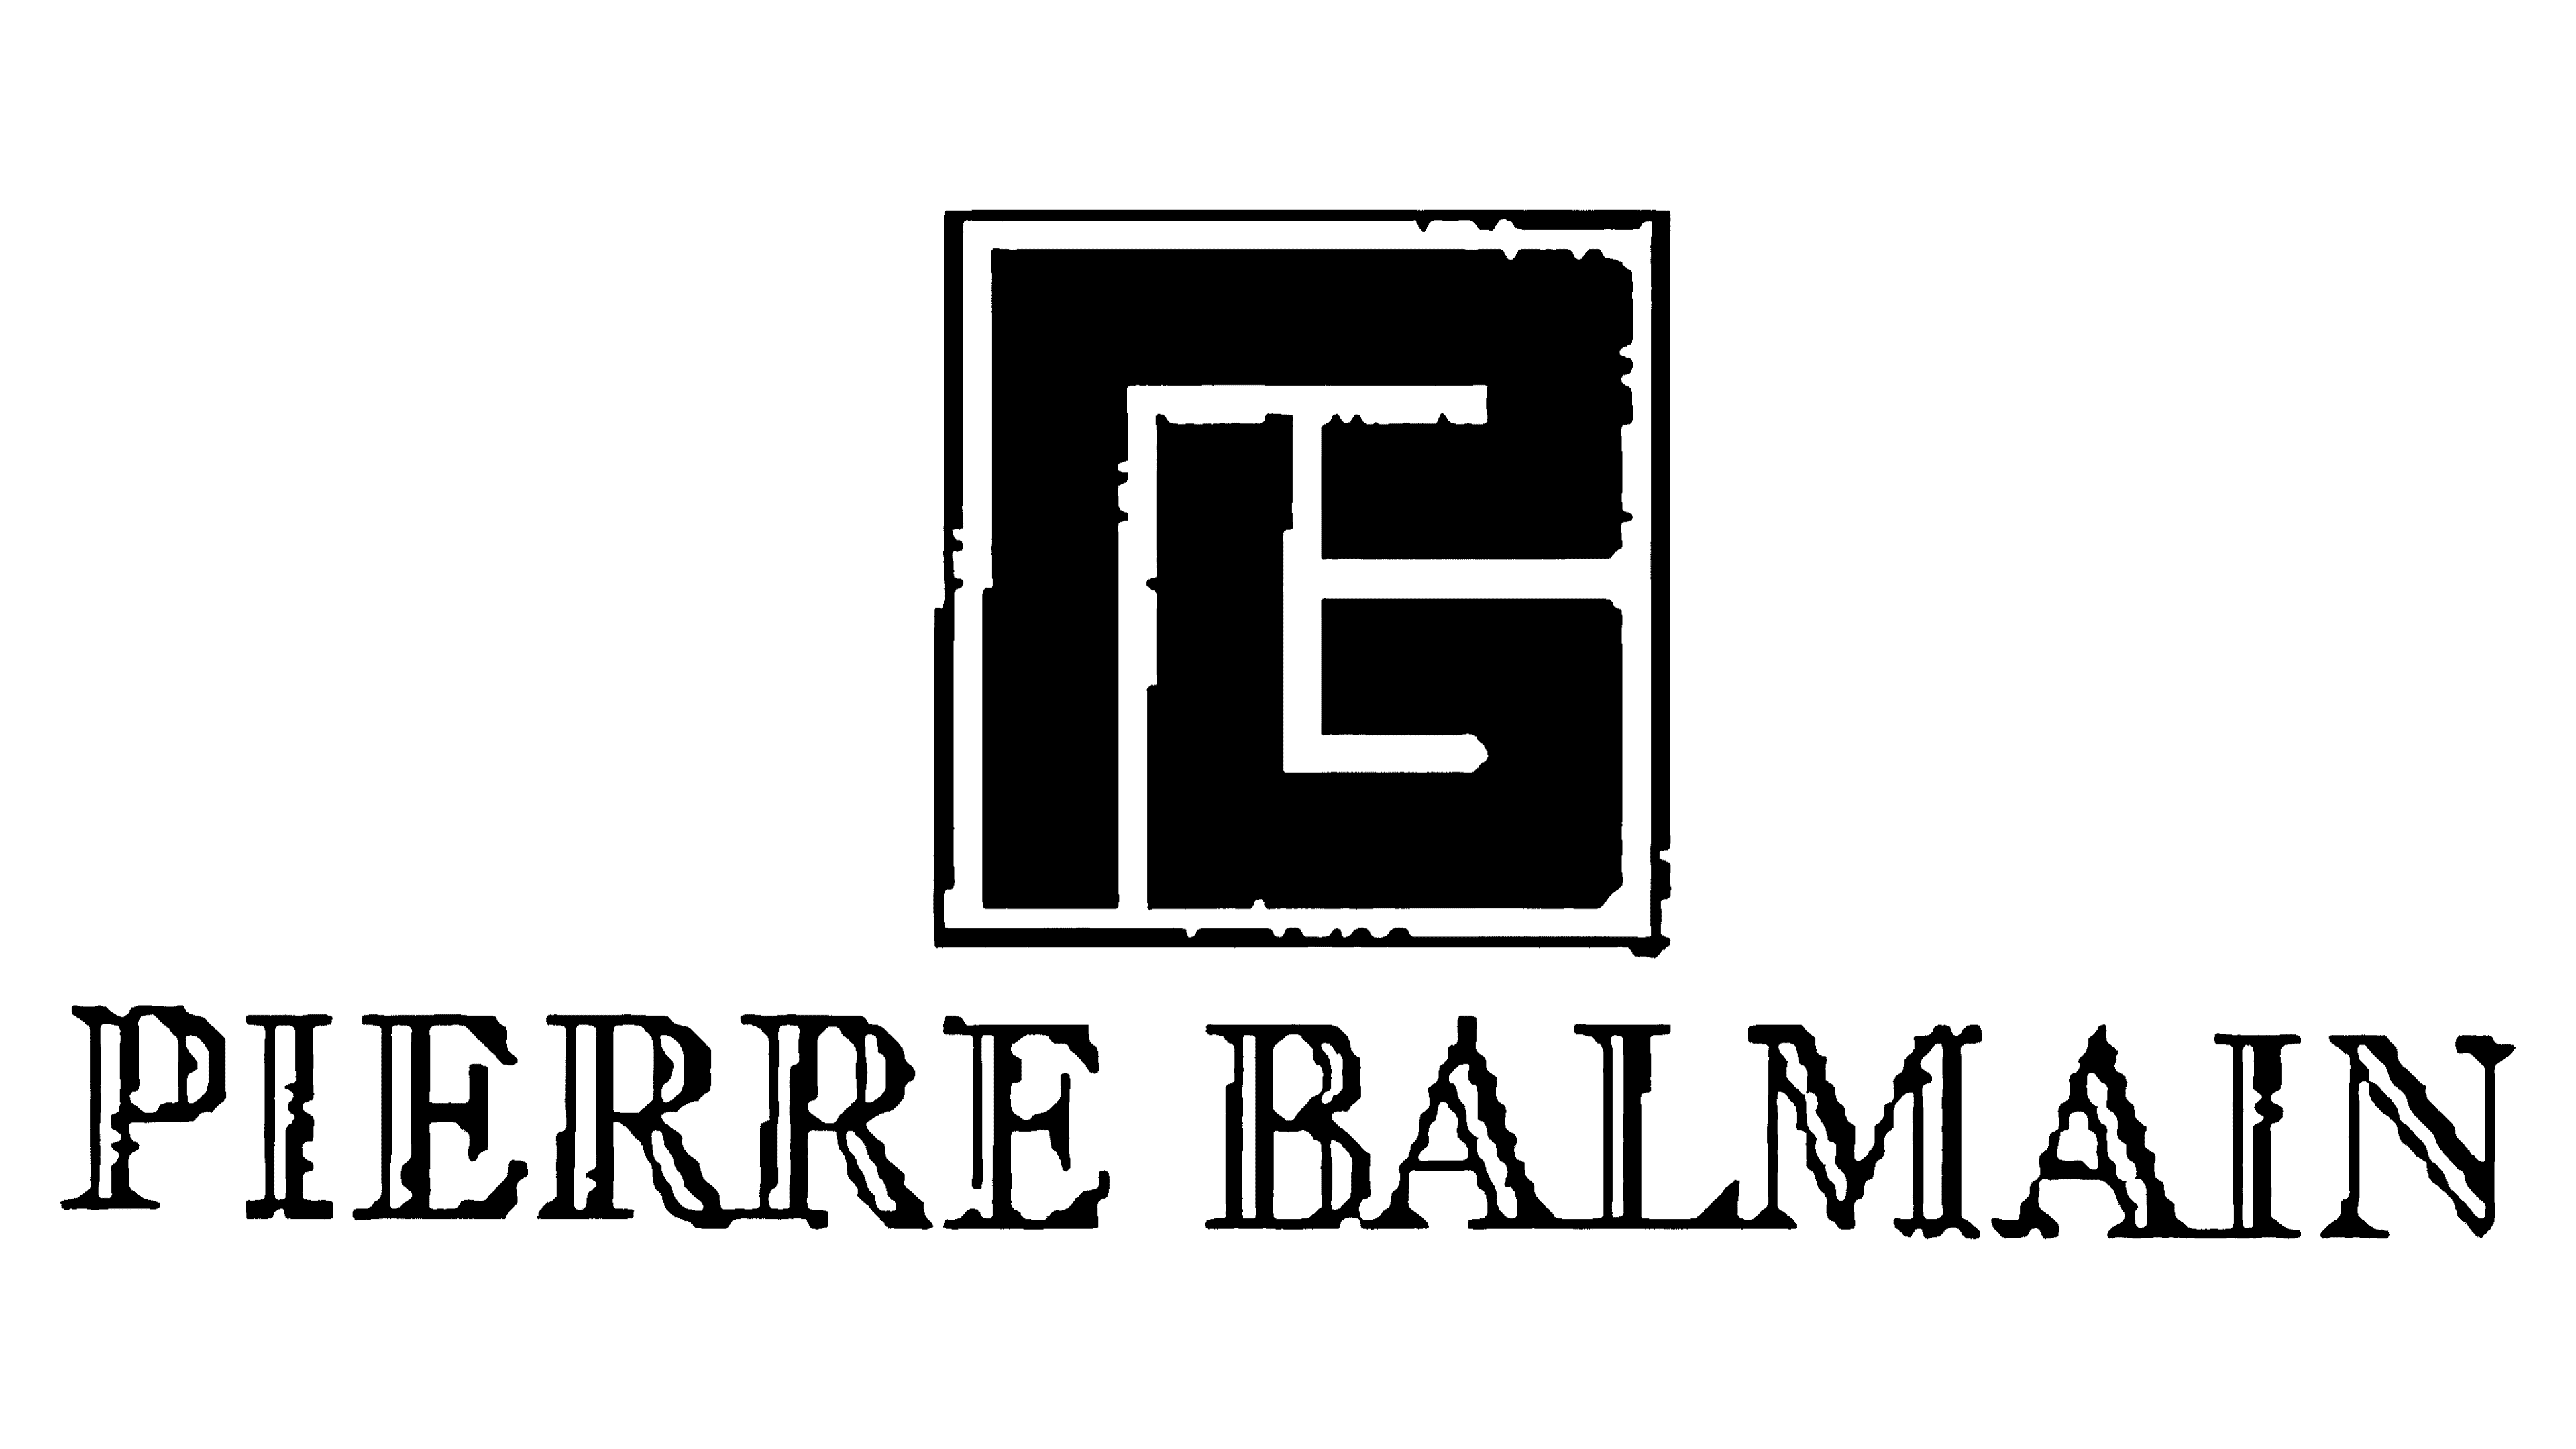 Top more than 62 balmain paris logo latest - ceg.edu.vn